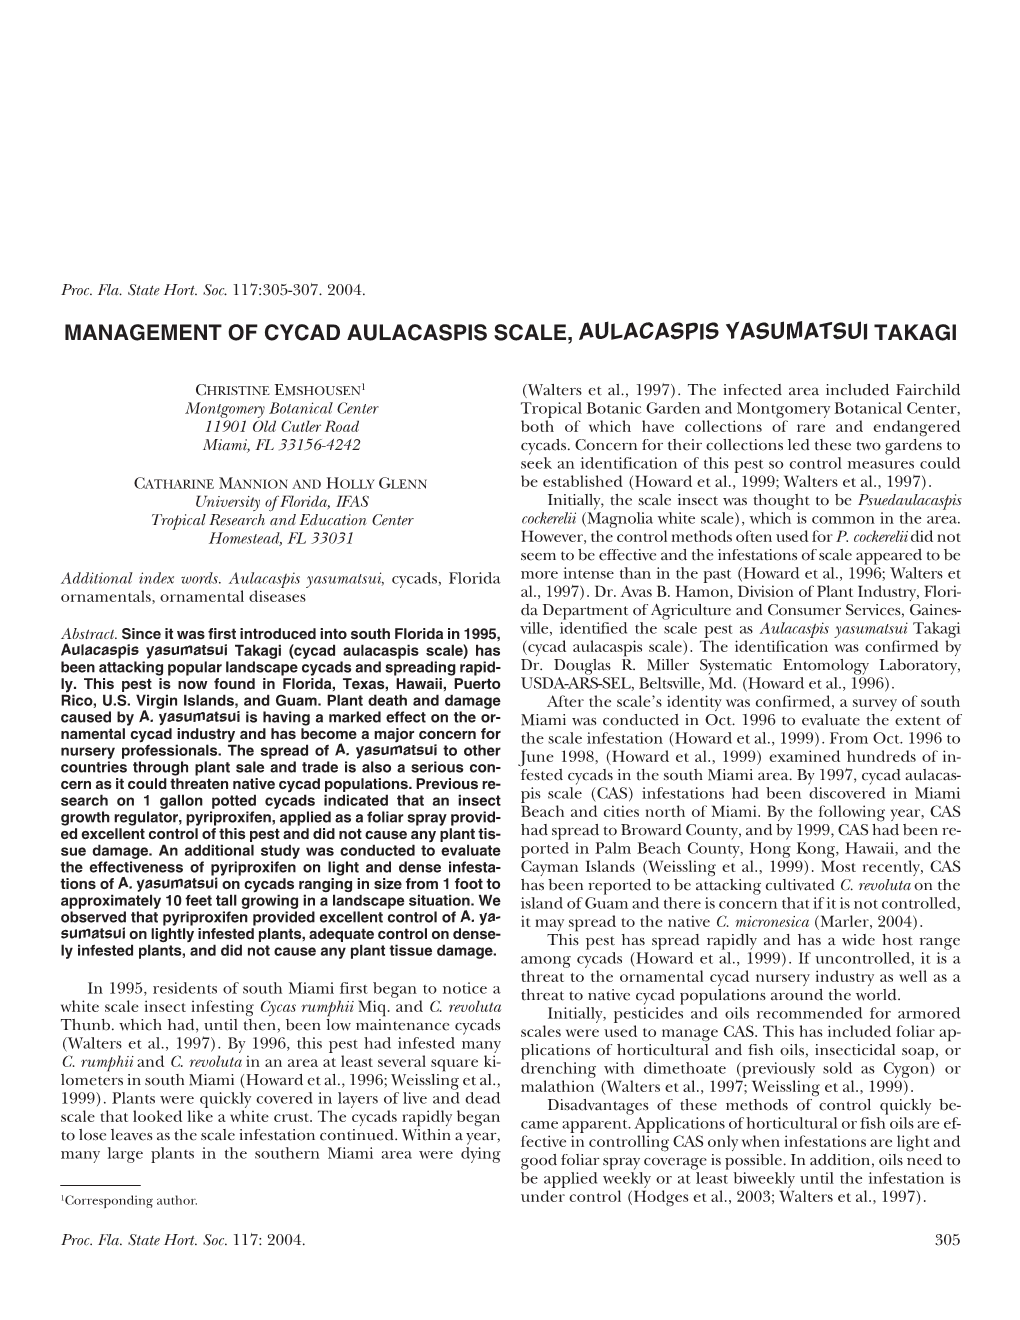 Management of Cycad Aulacaspis Scale, Aulacaspis Yasumatsui Takagi